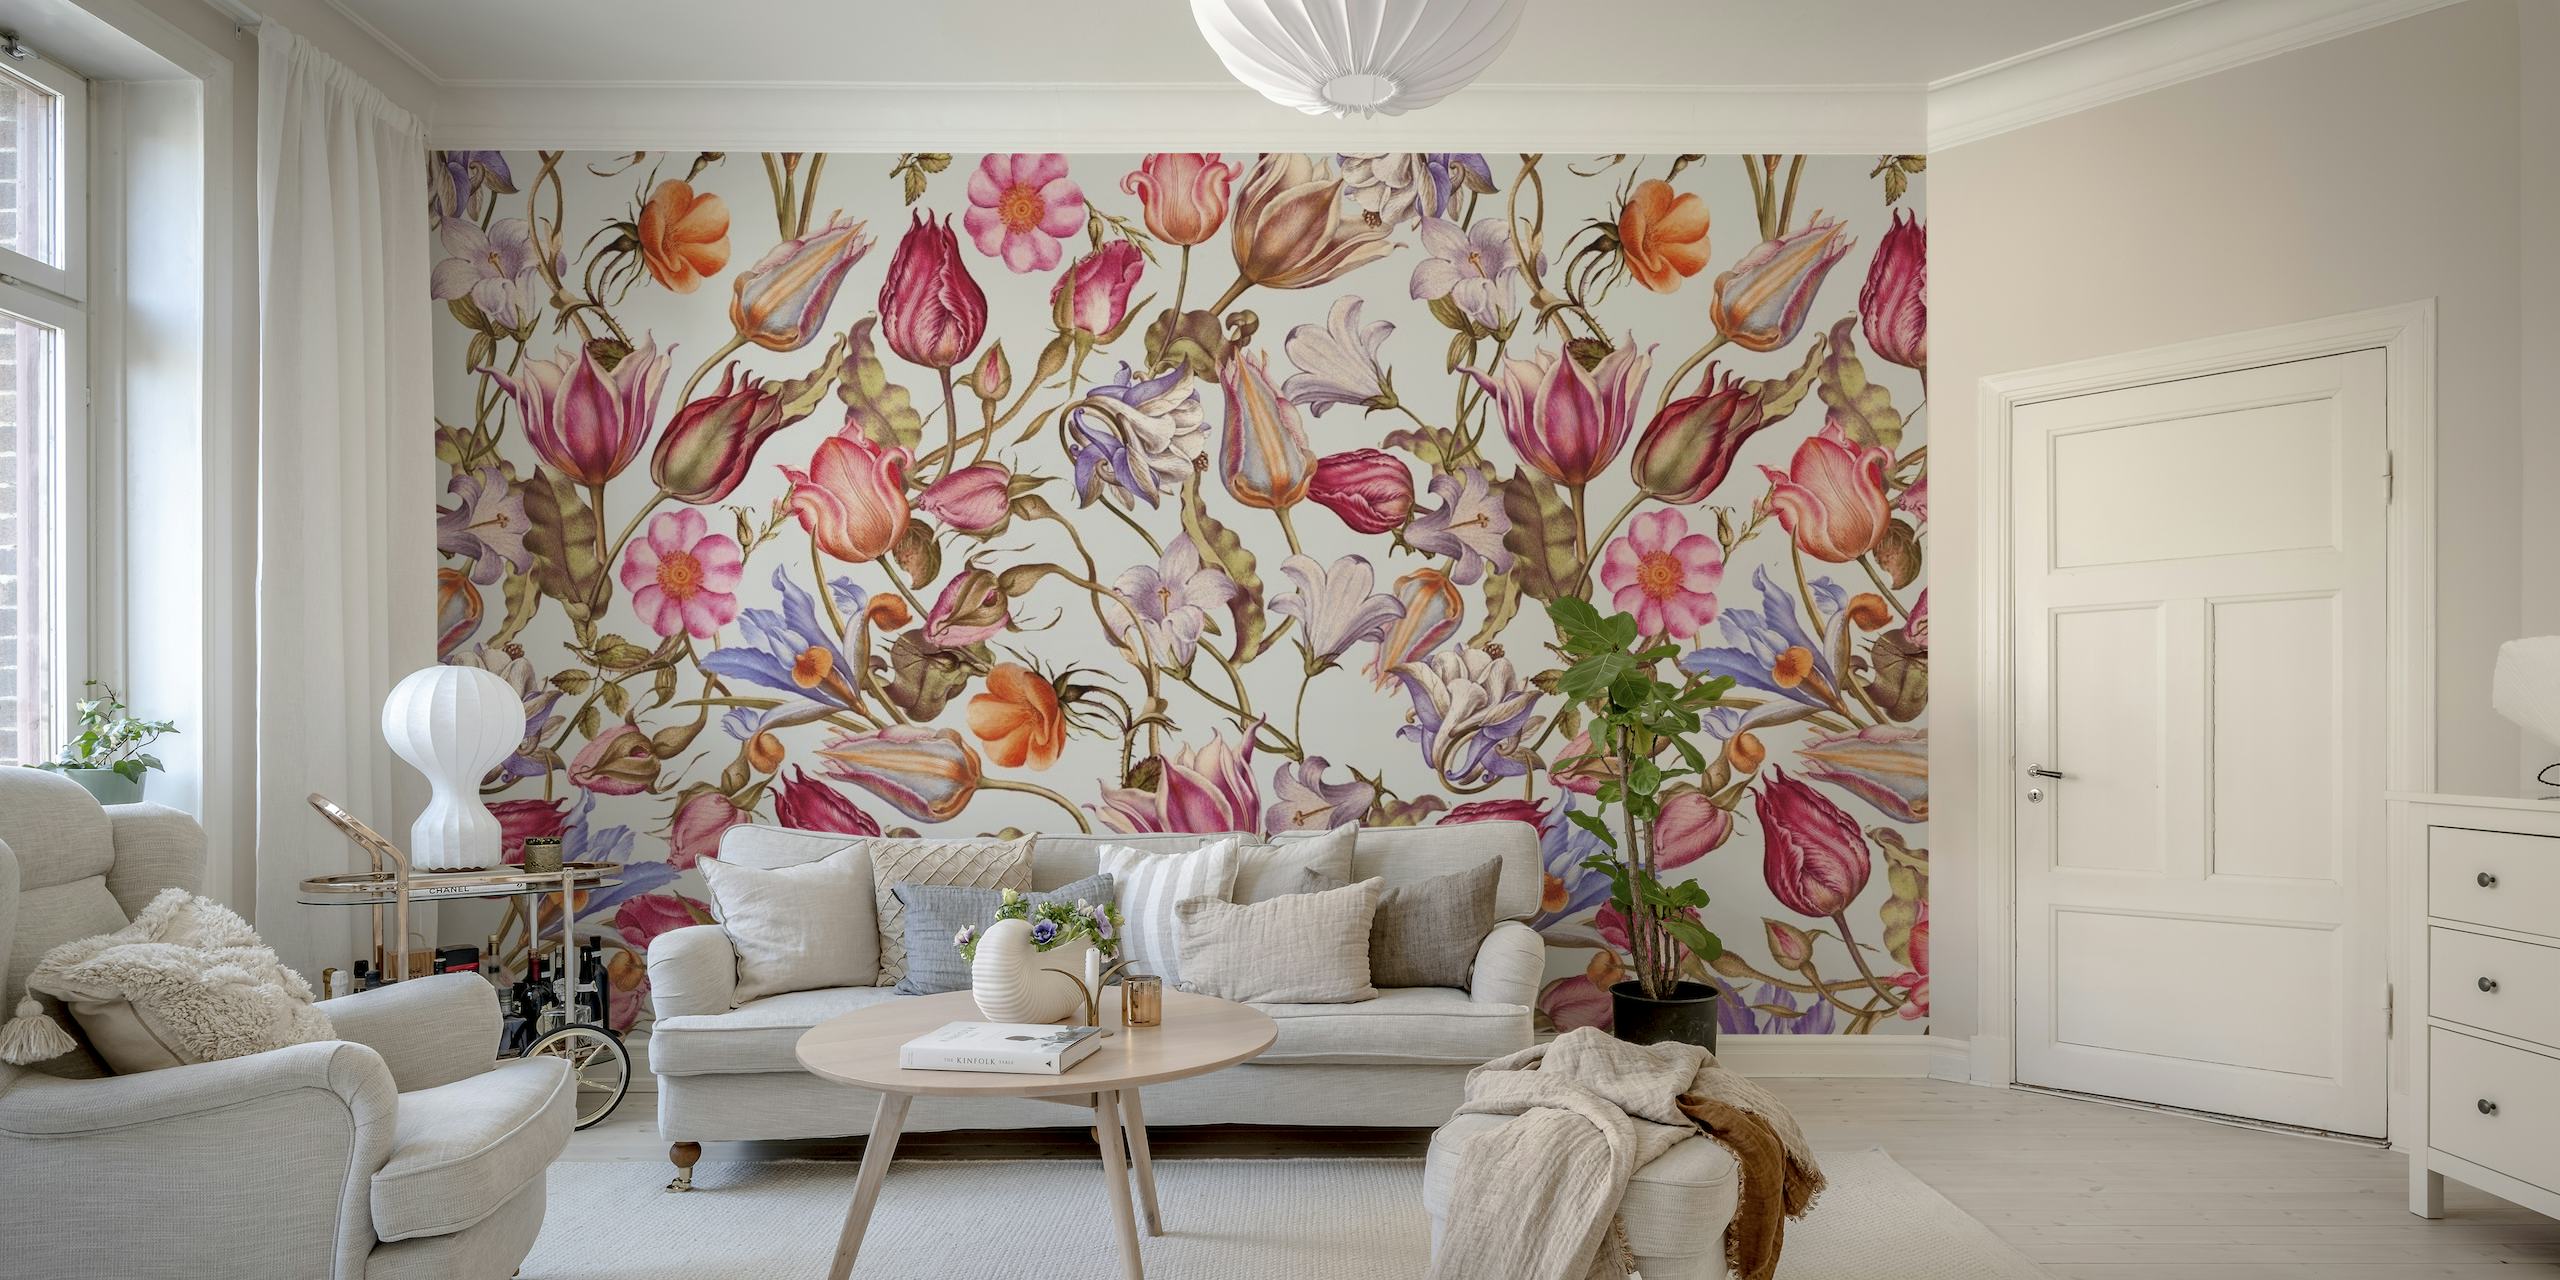 Florales Wandbild mit Sommergartenblumen in Rosa-, Orange- und Lilatönen